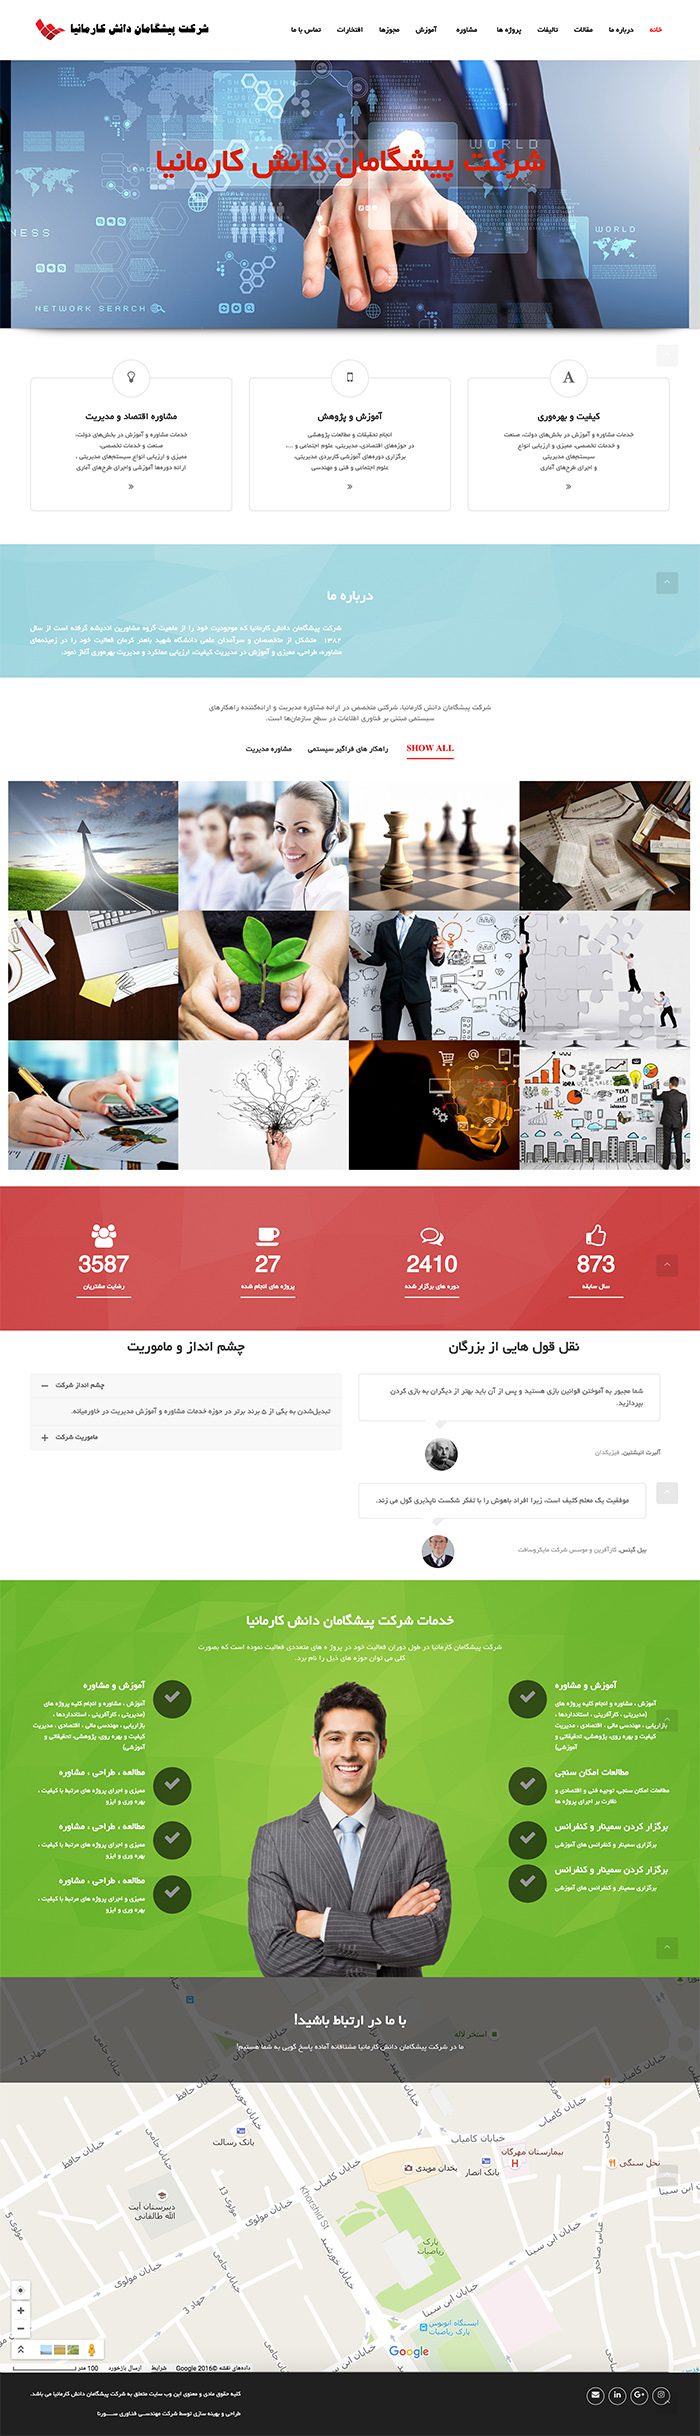 طراحی سایت شرکت پیشگامان دانش کارمانیا توسط شرکت طراحی سایت سورنا در کرمان